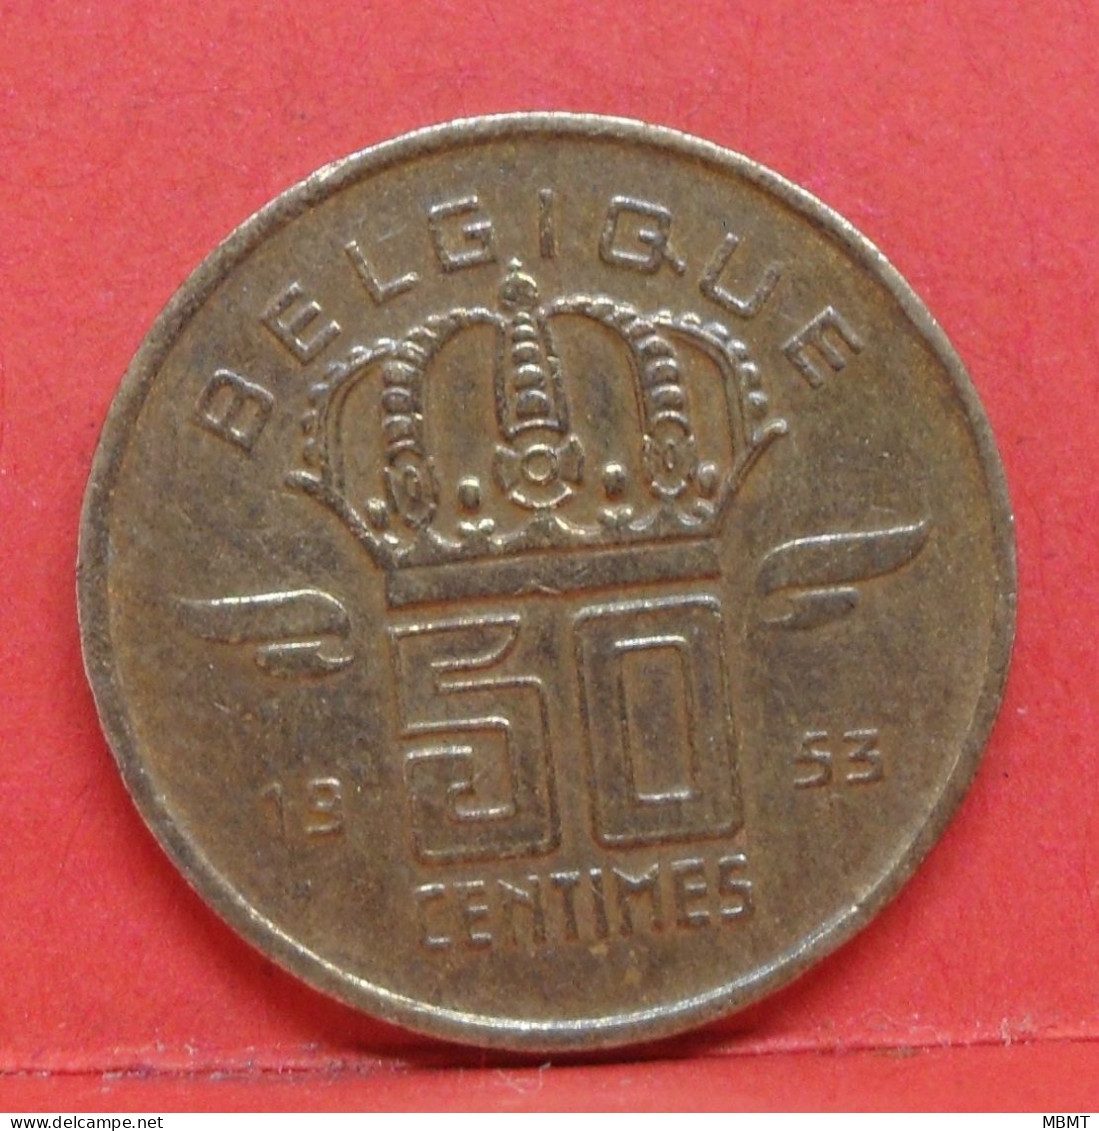 50 Centimes 1953 - SUP - Pièce Monnaie Belgique - Article N°1703 - 50 Cent